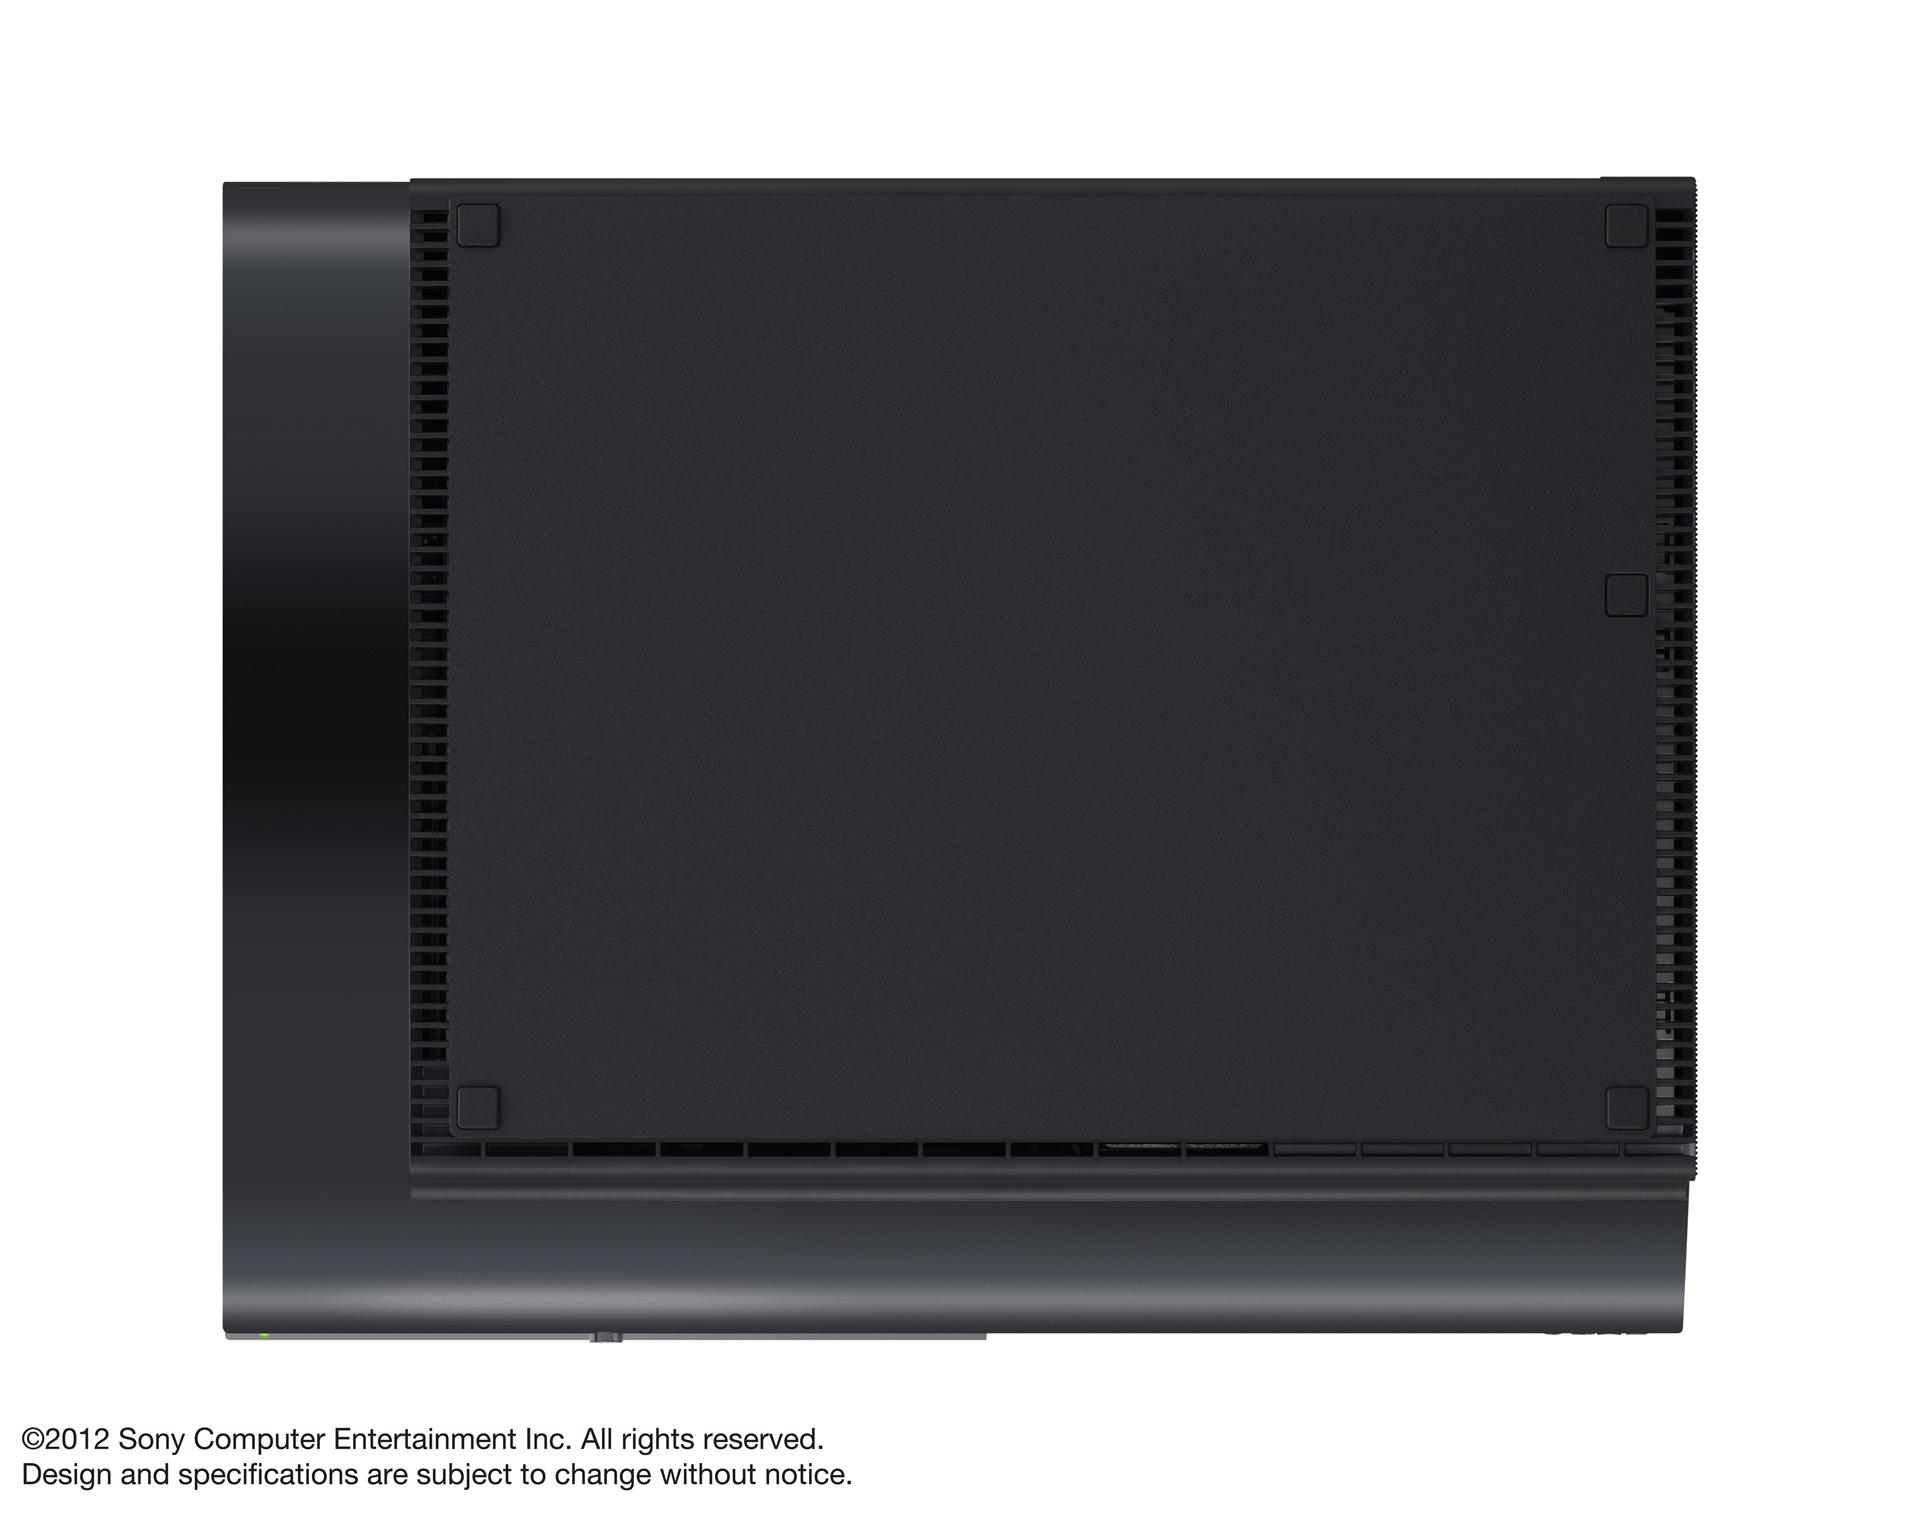 PS3 Super Slim Unten - Playstation Super Slim: Details zur externen Festplatte und offizielle Bilder der Konsole